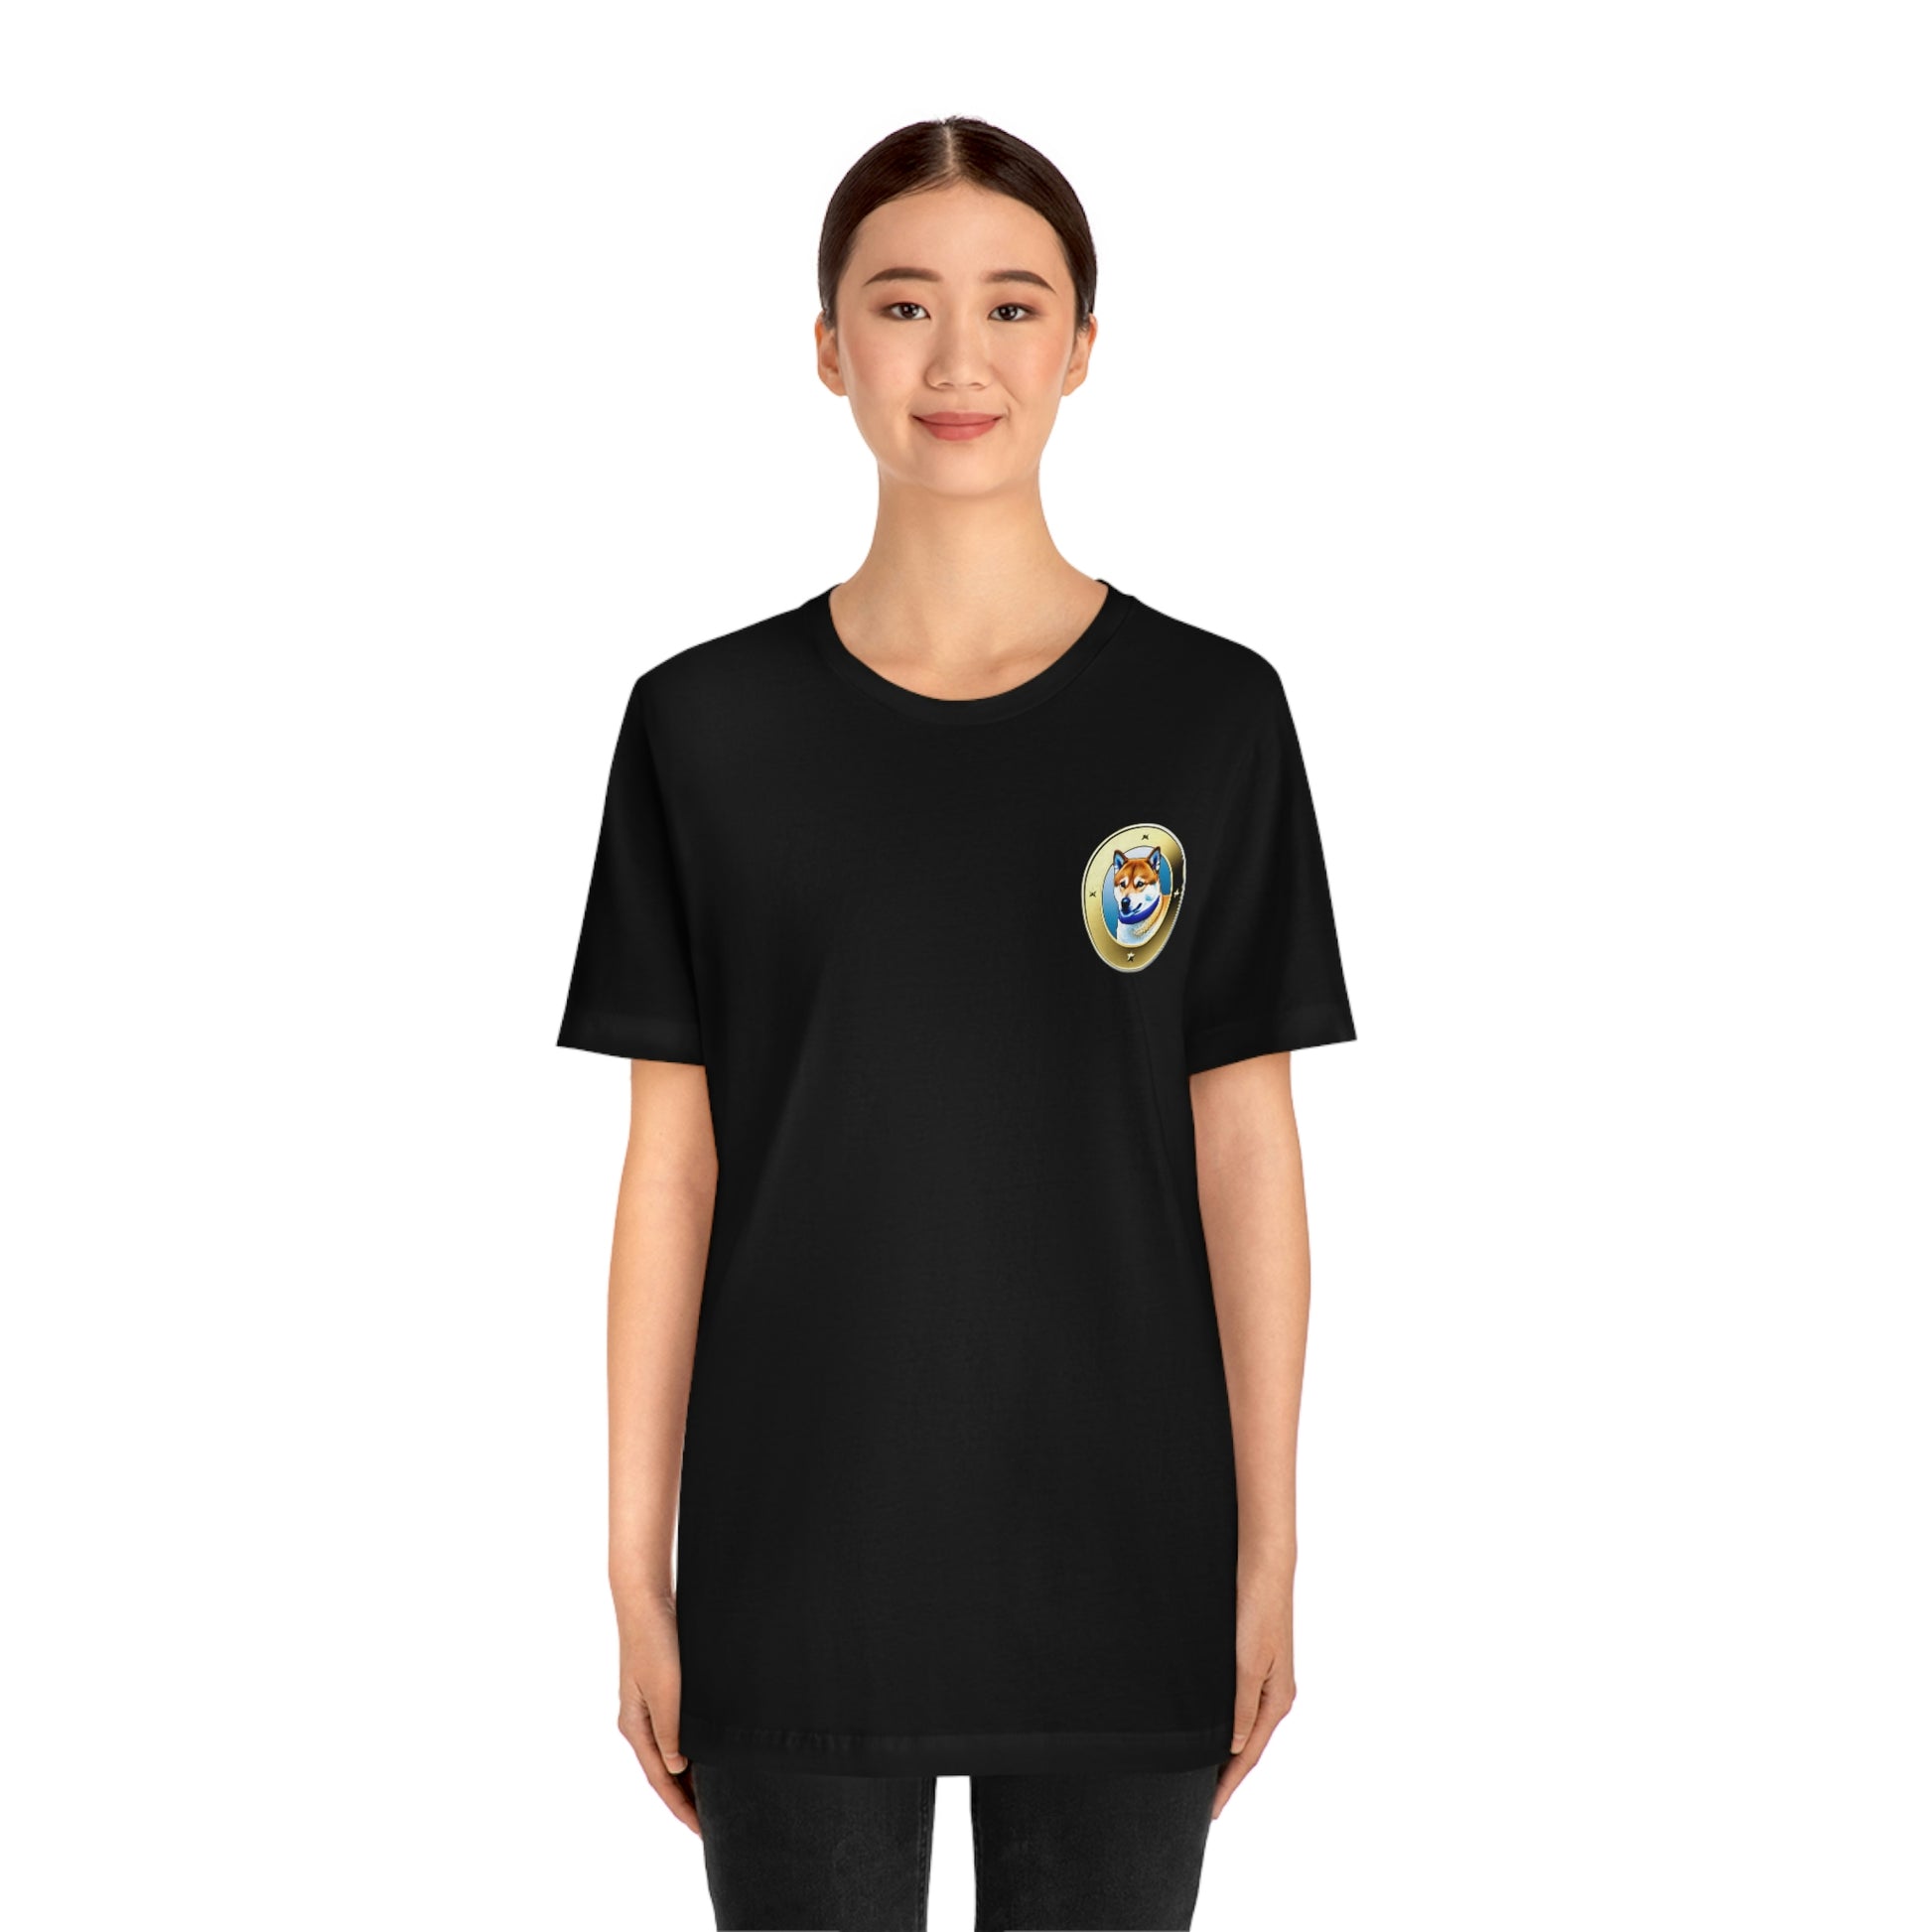 Shiba Inu Unisex Jersey Short Sleeve T-Shirt | BKLA | Shirts & Tops | Tshirt, crop top, tee, sleeve tee, tank top, cotton tee